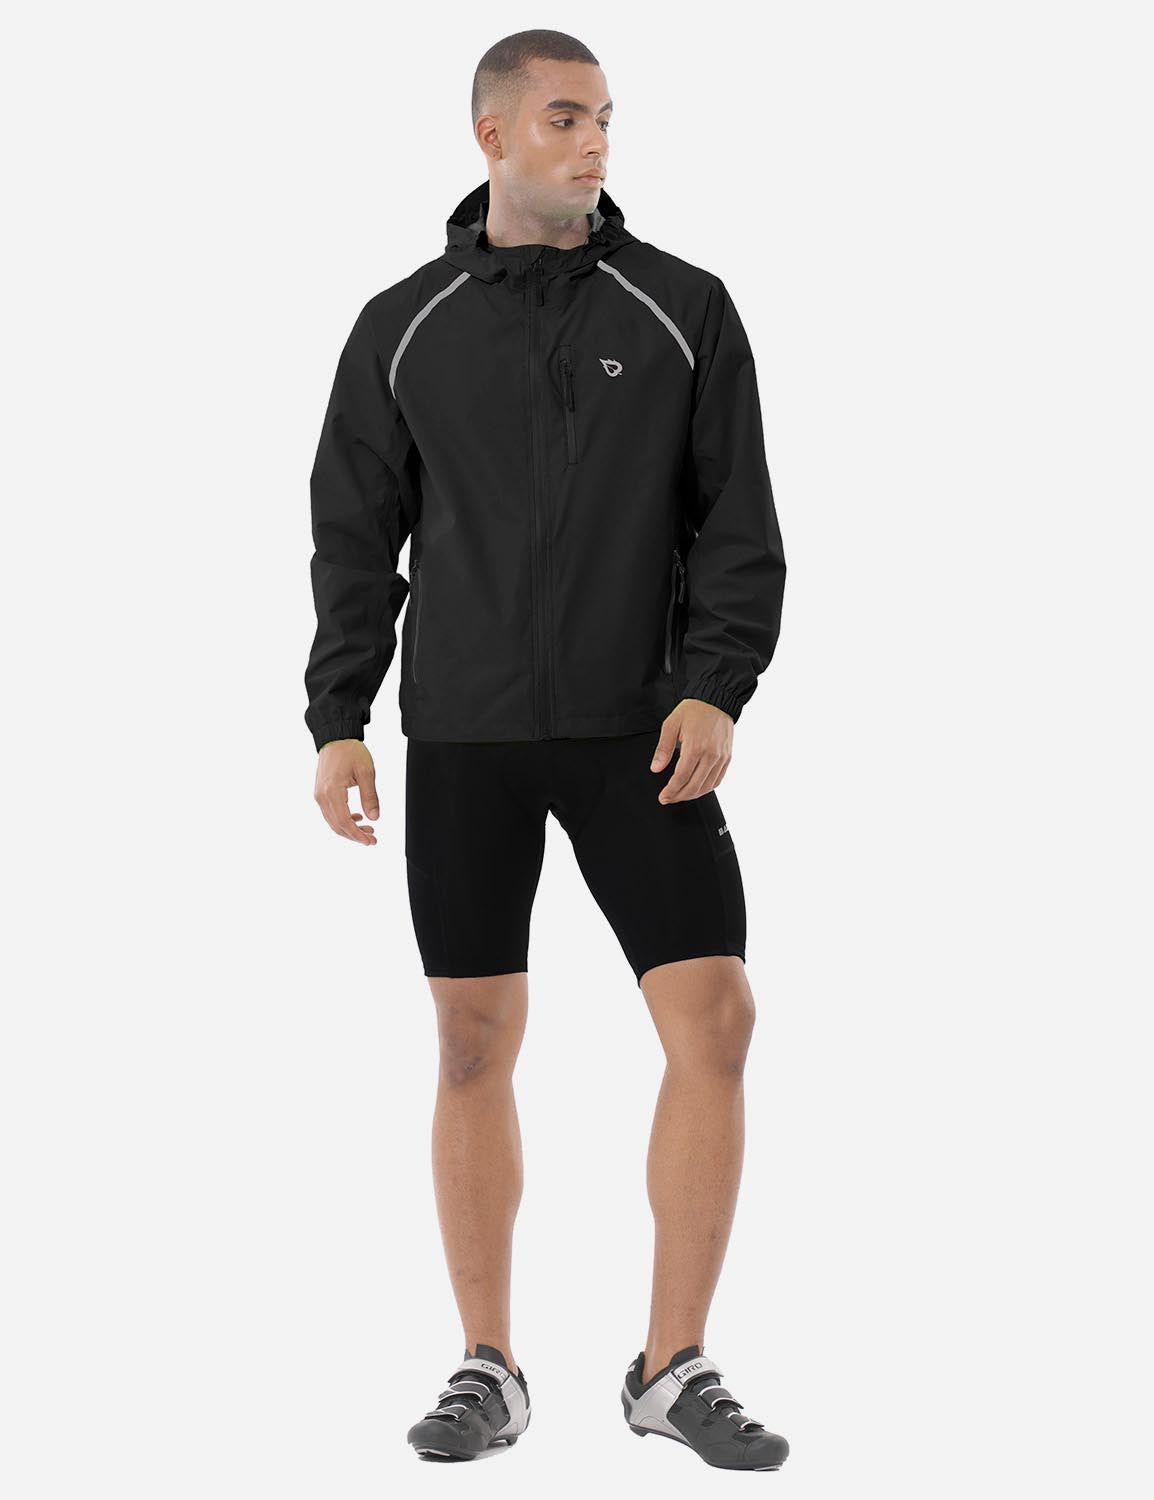 Baleaf Men's Fluorescent Waterproof Packable Windbreaker Track Jacket aaa467 Black Full